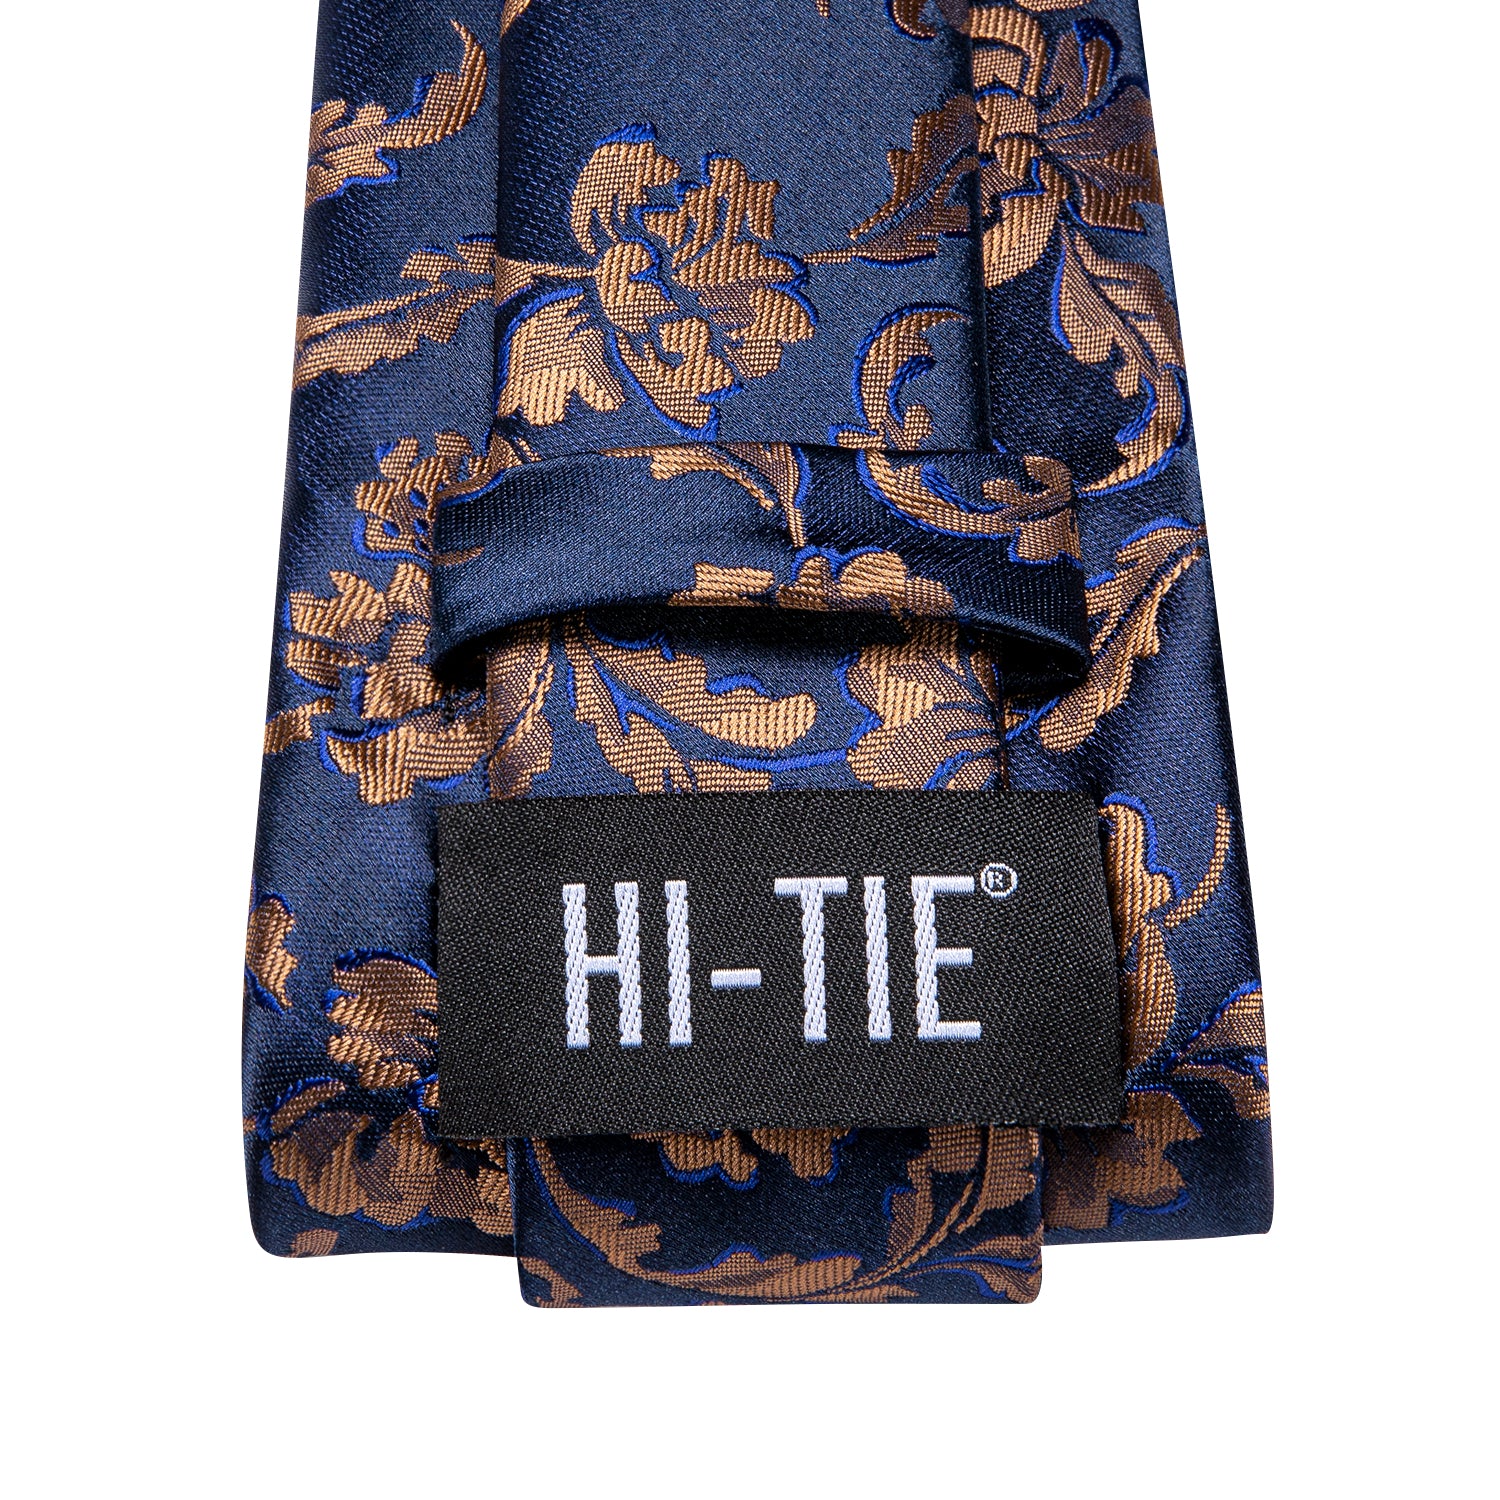 Hi-Tie Blue Gold Floral Men's Tie Pocket Square Cufflinks Set